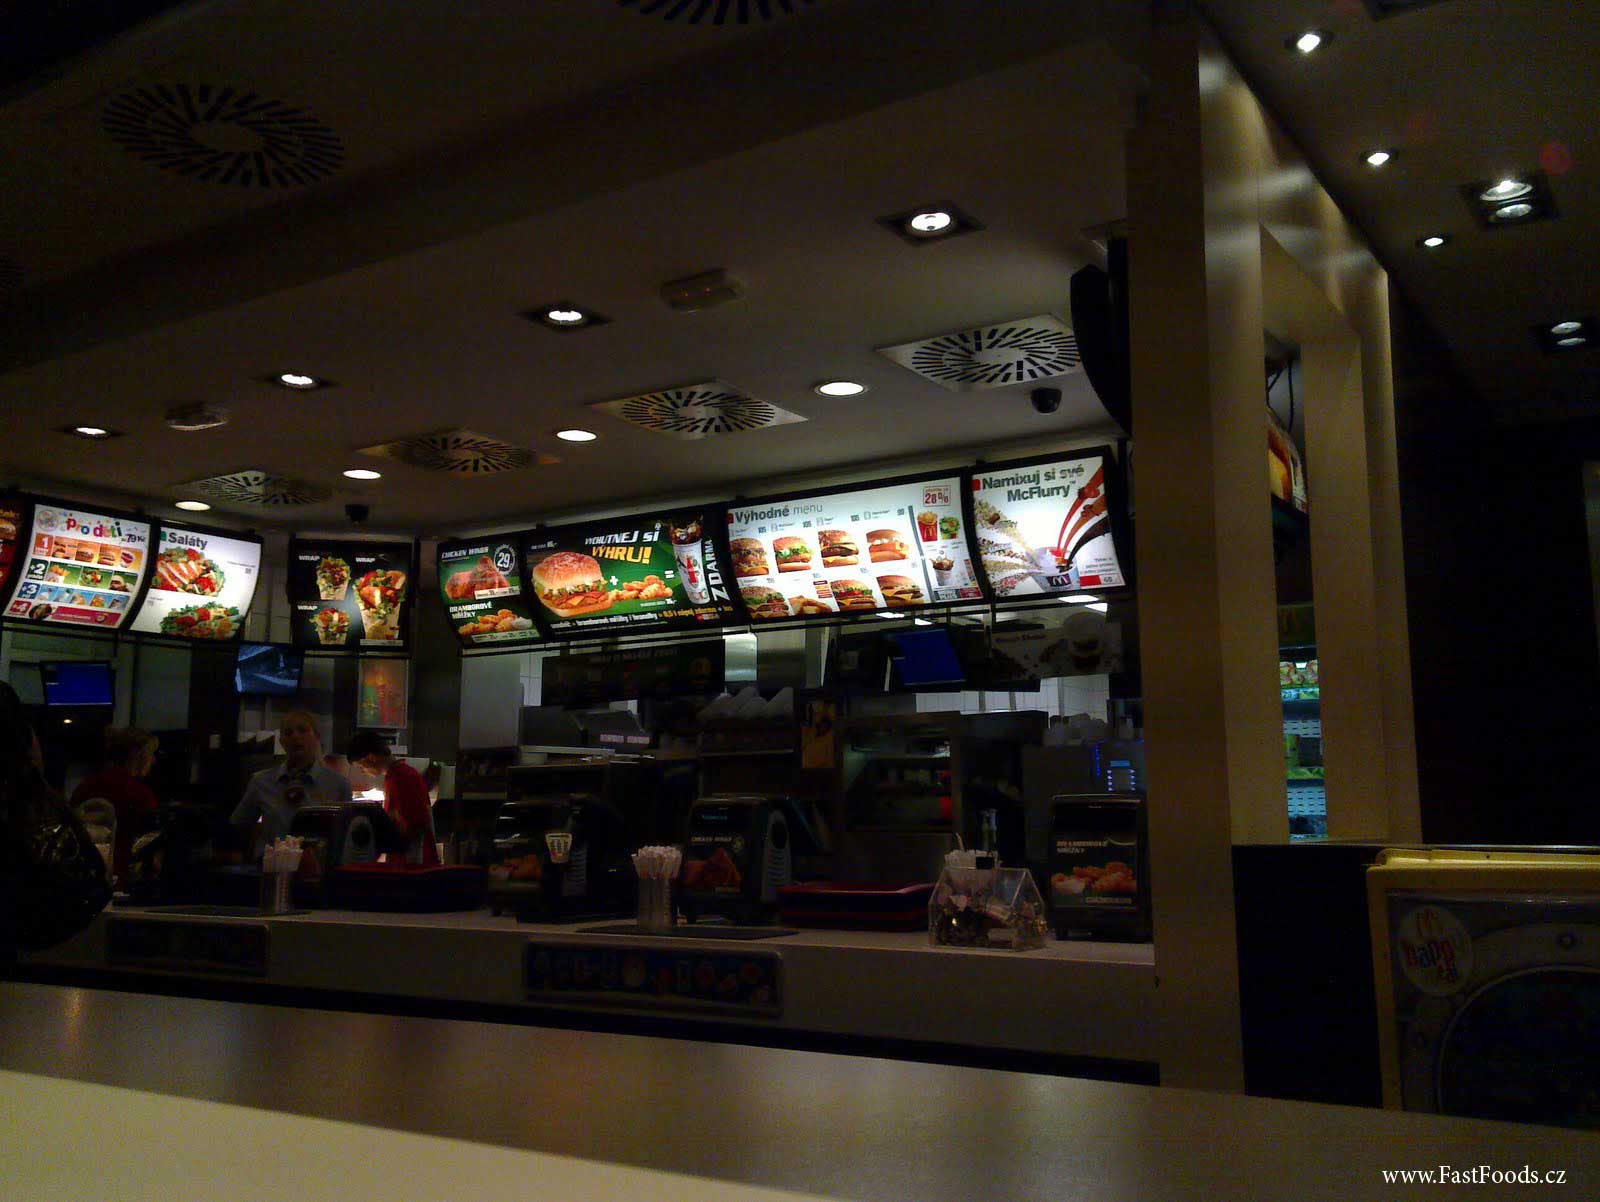 McDonalds Jižní Spojka (Sulická)